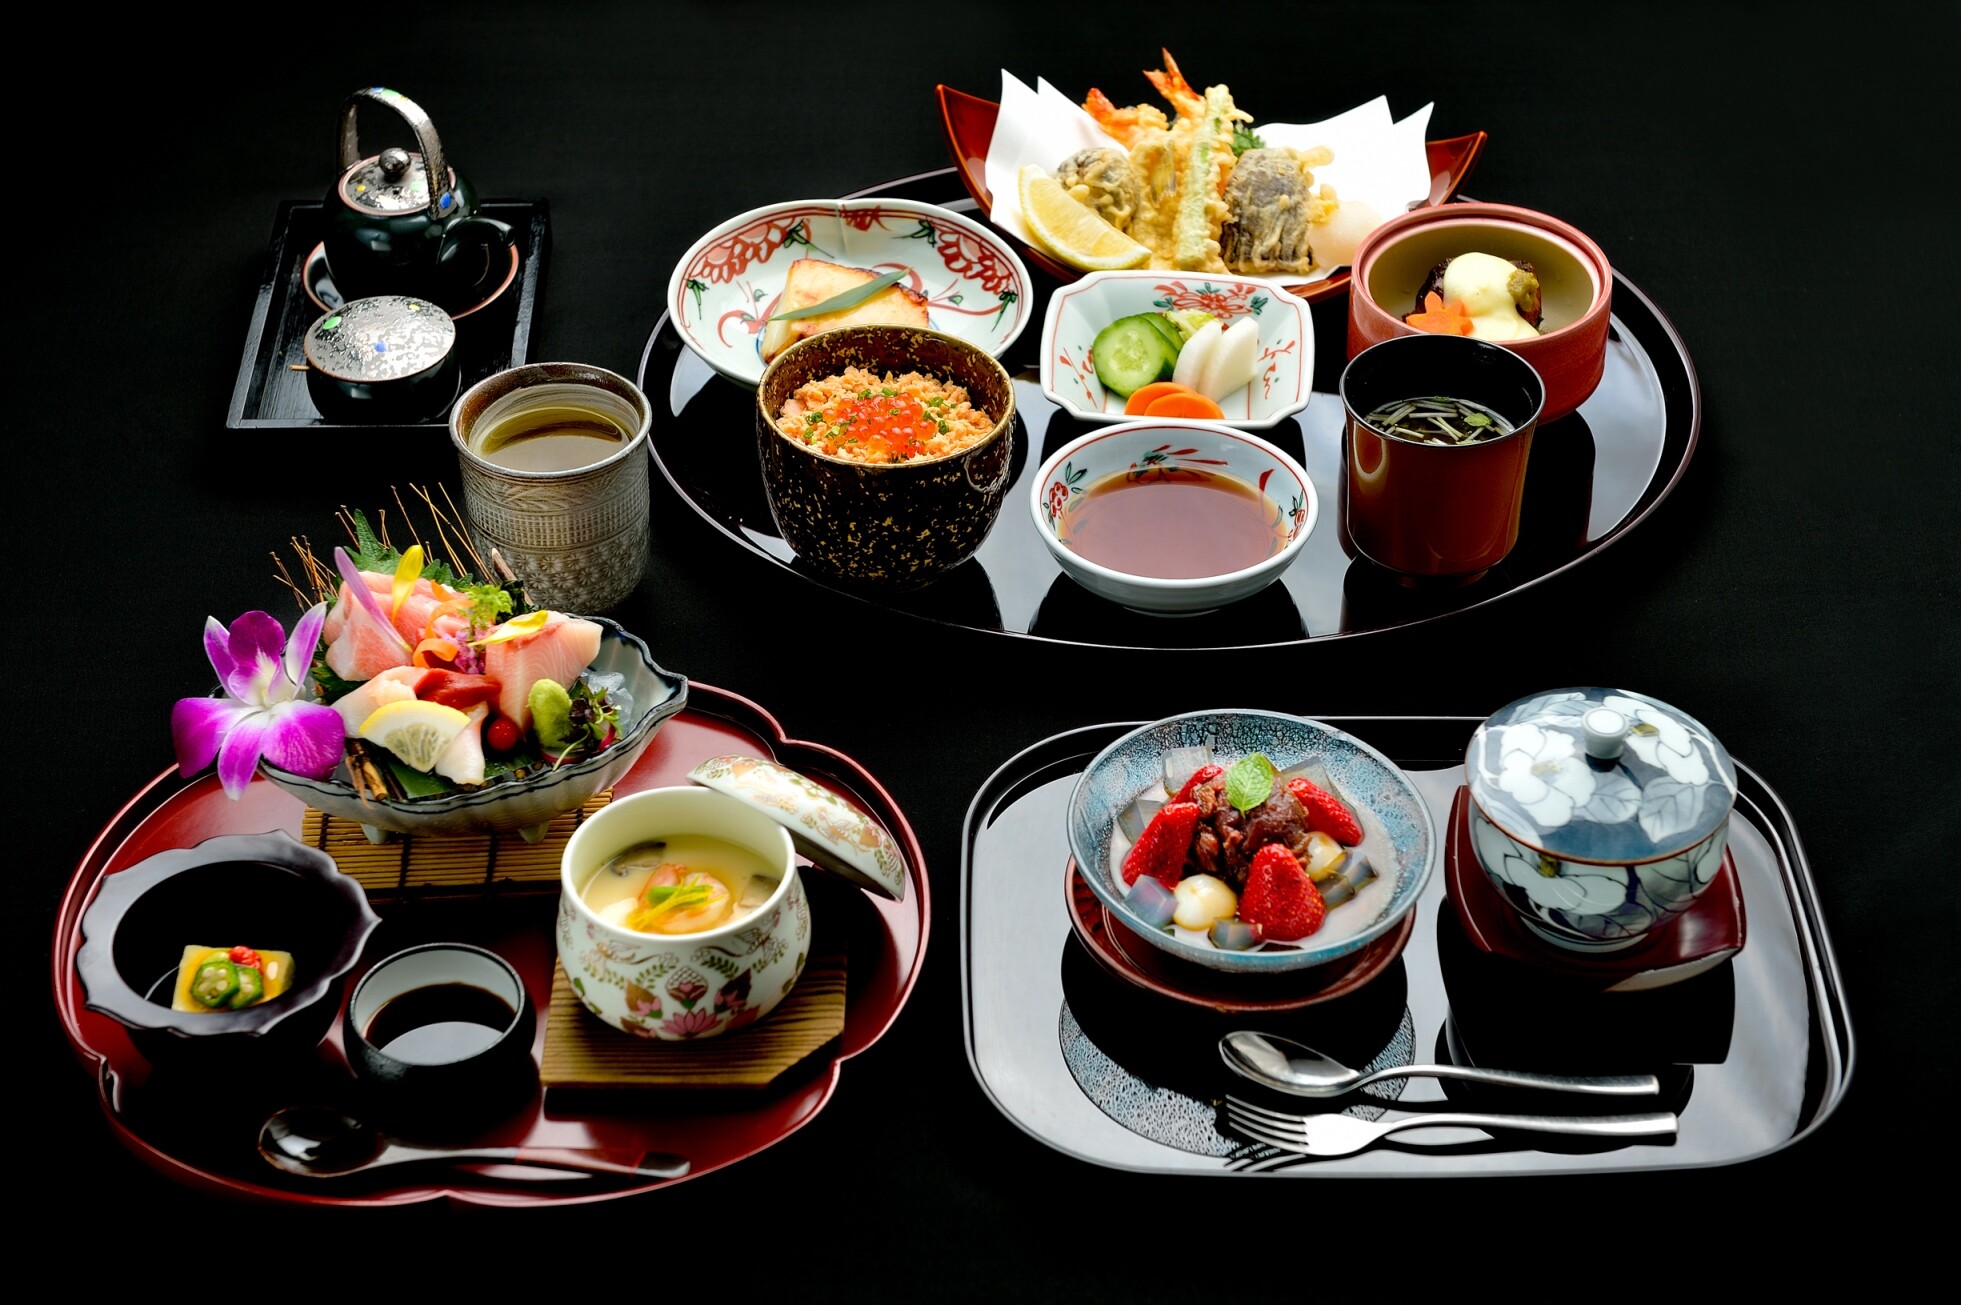 ห้องอาหารยามาซาโตะได้รับ "มิชลิน เพลท"  จากคู่มือแนะนำร้านอาหารและที่พักระดับโลก 'มิชลิน ไกด์' ต่อเนื่องเป็นปีที่ 4